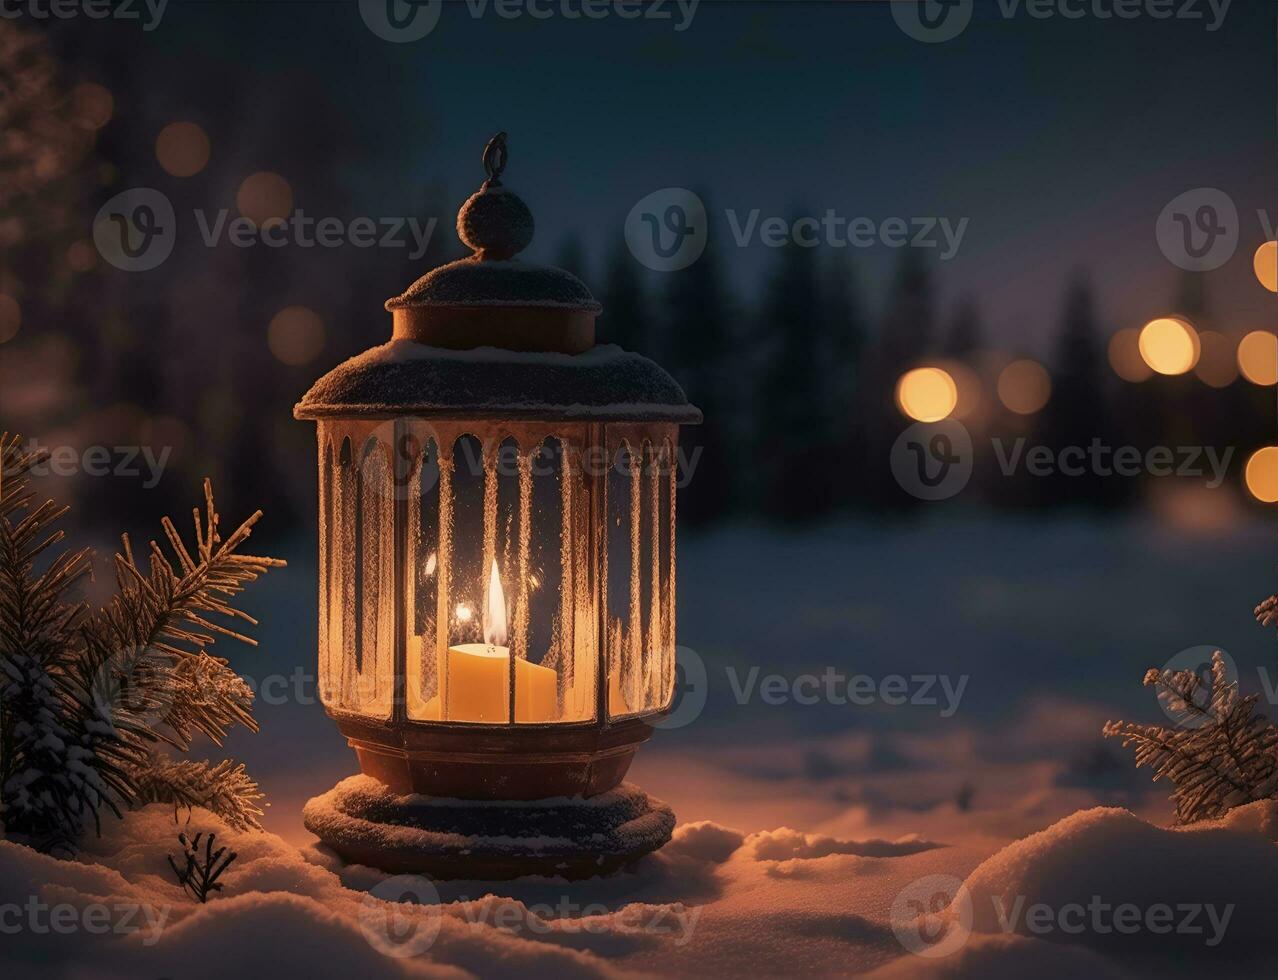 en vibrerande mysigt lykta dekoration jul natt foto